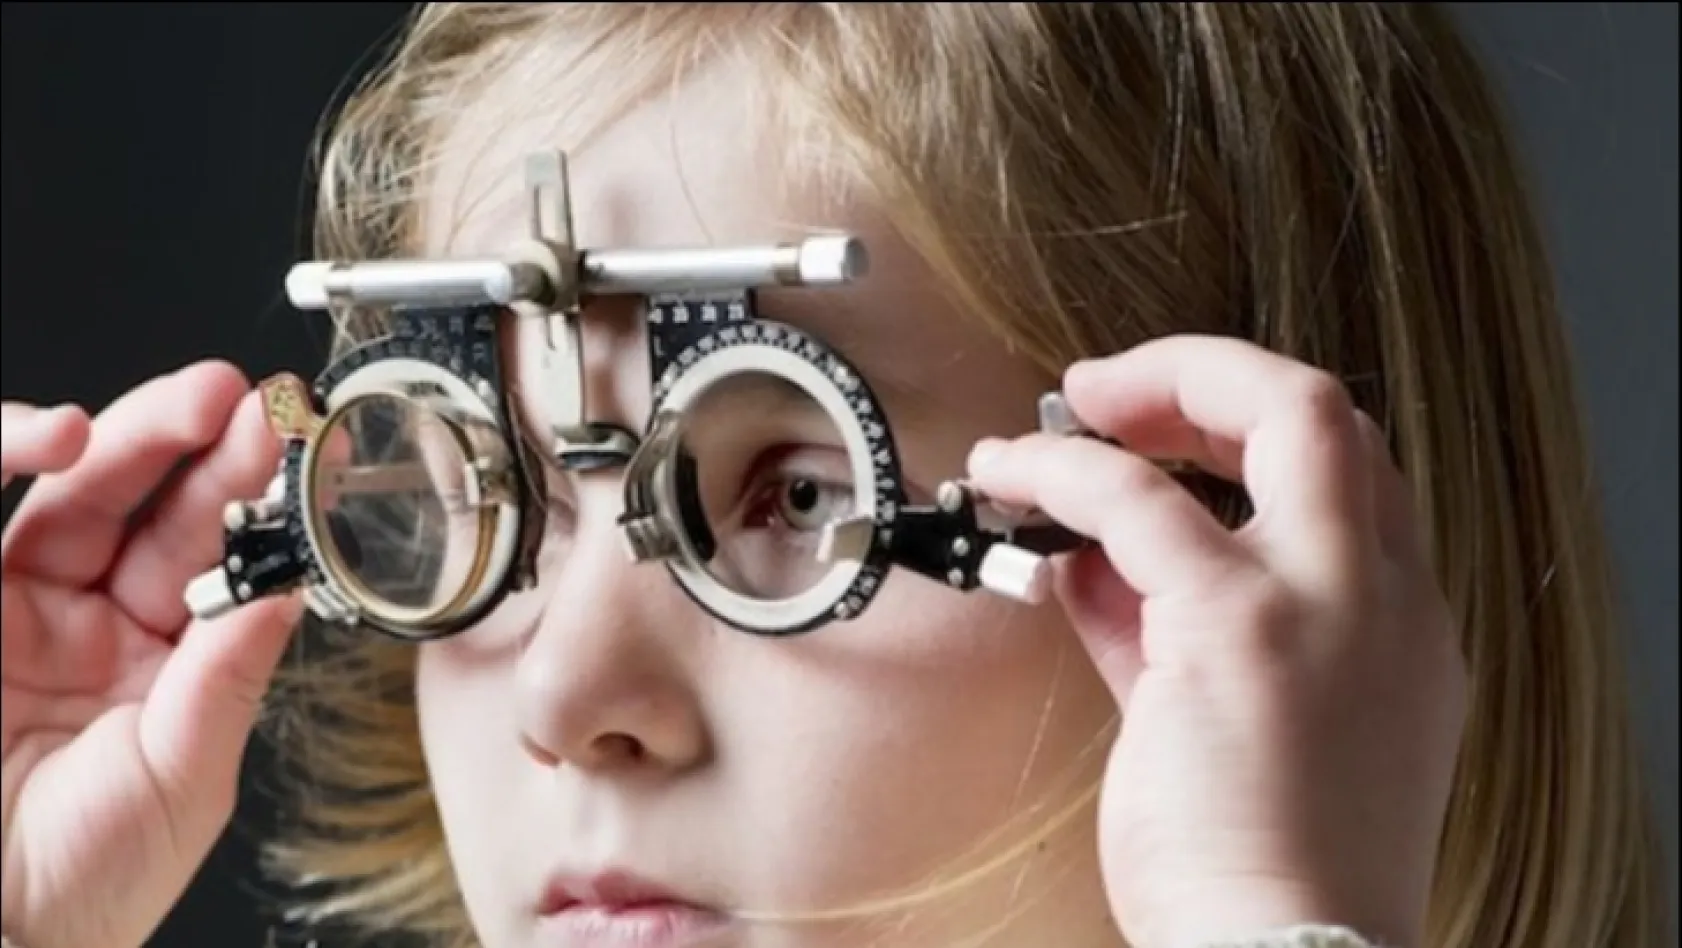 Göz bozukluğu çocuklarda okul başarısını etkiliyor